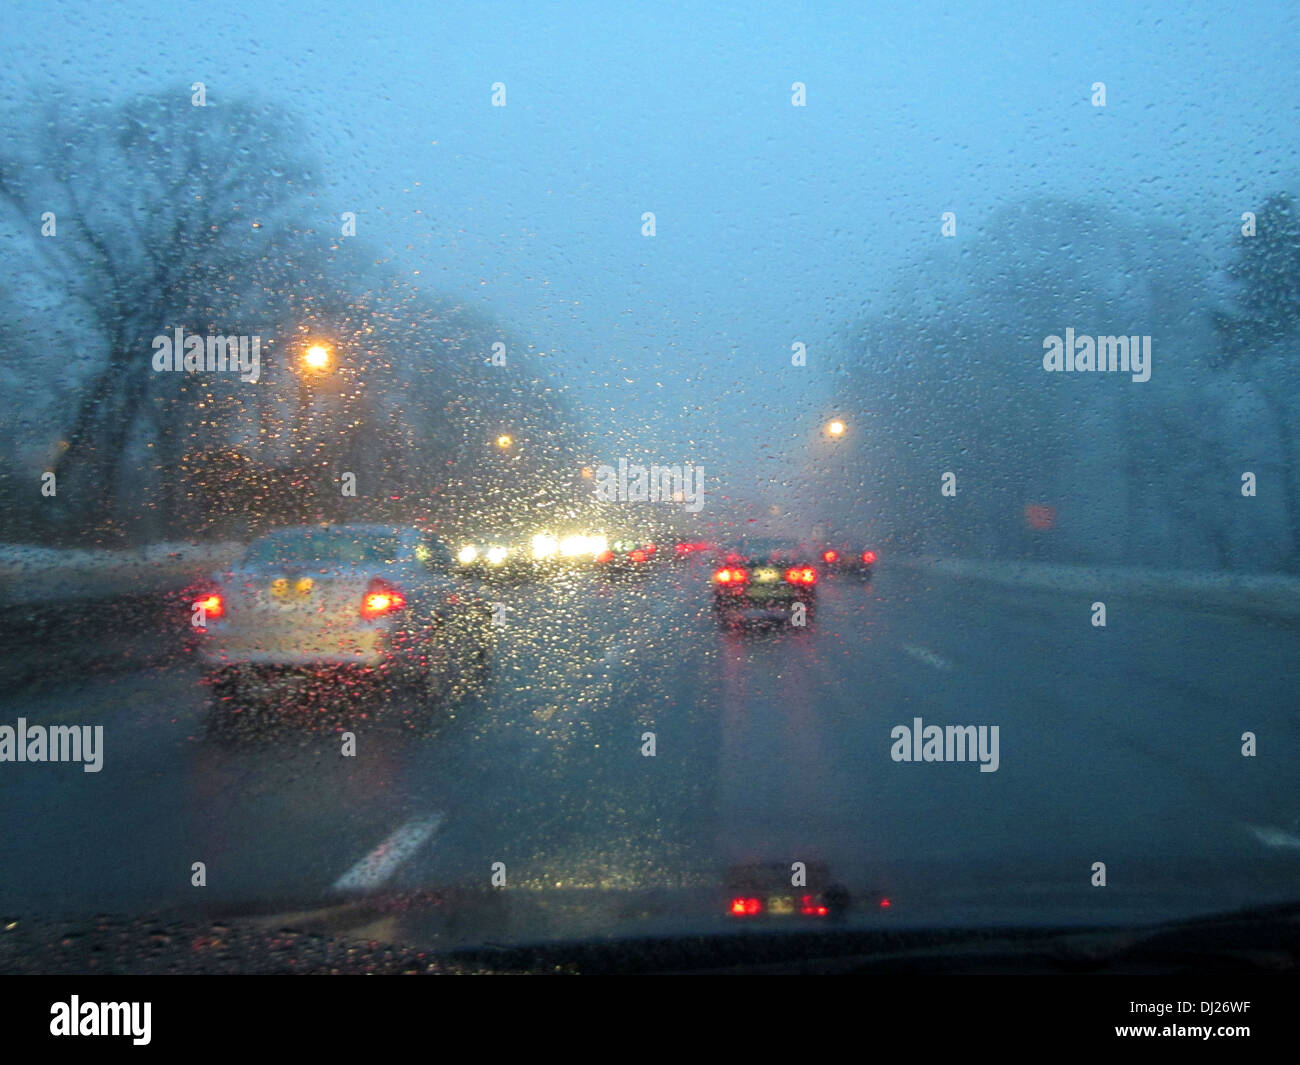 Conducir por una carretera al atardecer en la hora pico de tráfico con la lluvia y la niebla que se ciernen sobre el parabrisas. Foto de stock